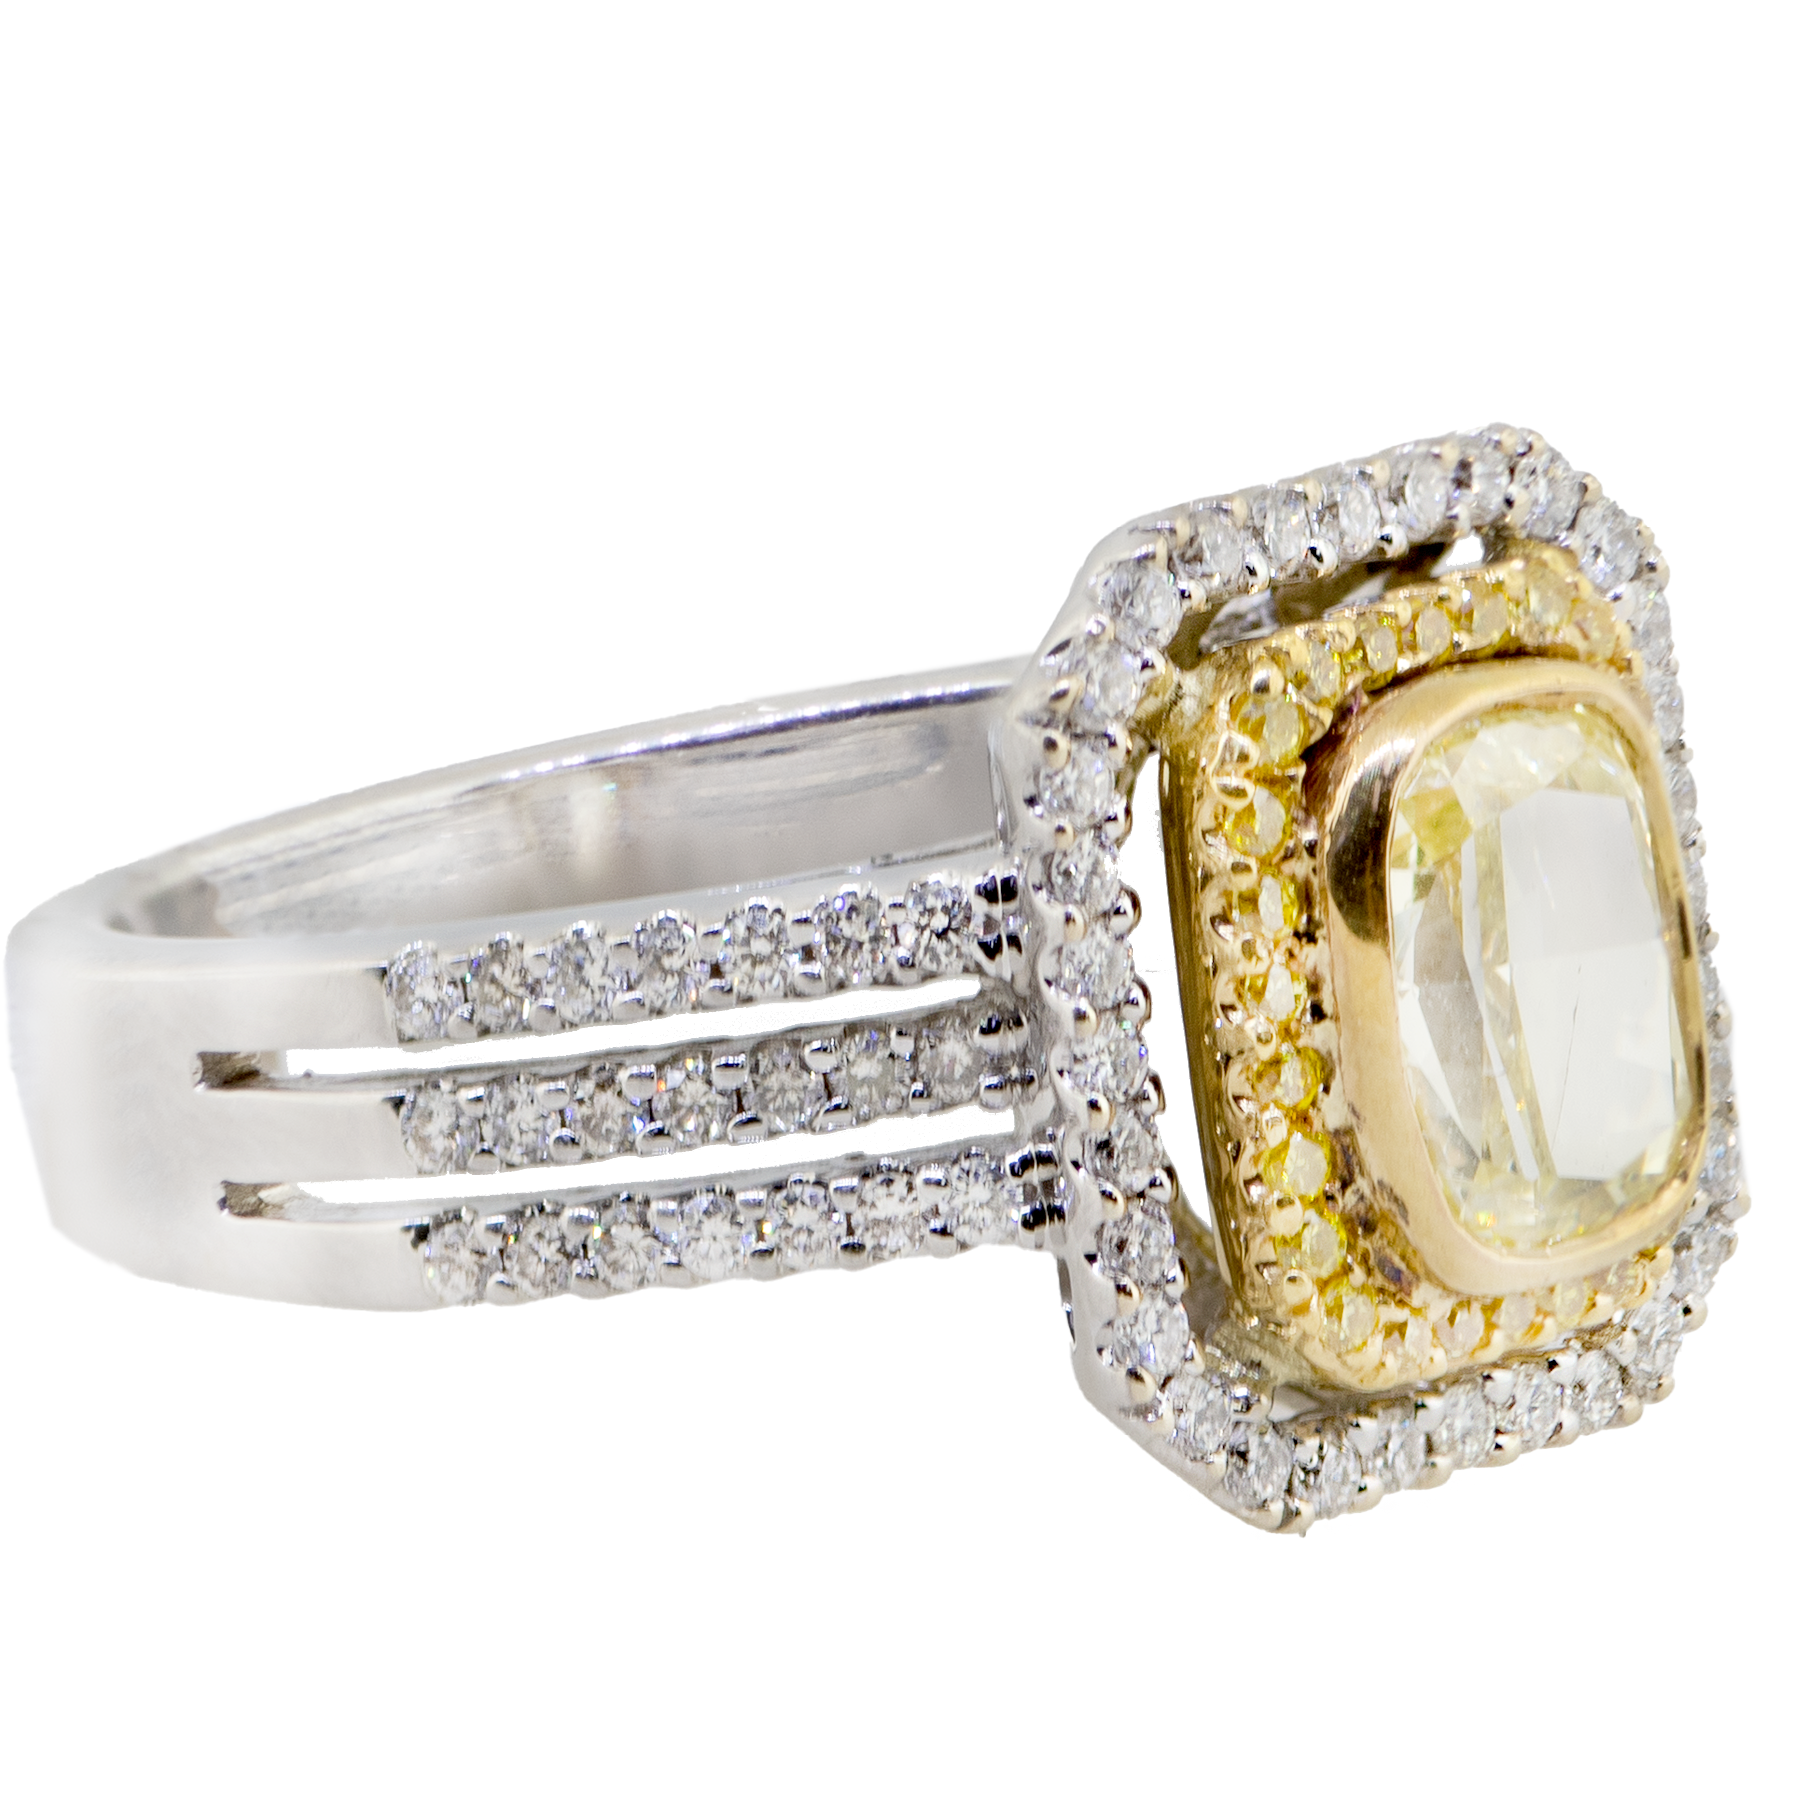 Buy Gold Diamond Ring//24k Gold Diamond Ring//diamond Engagement Ring//22k  Gold Engagement//artisan Diamond Ring//boho Engagement Ring Online in India  - Etsy